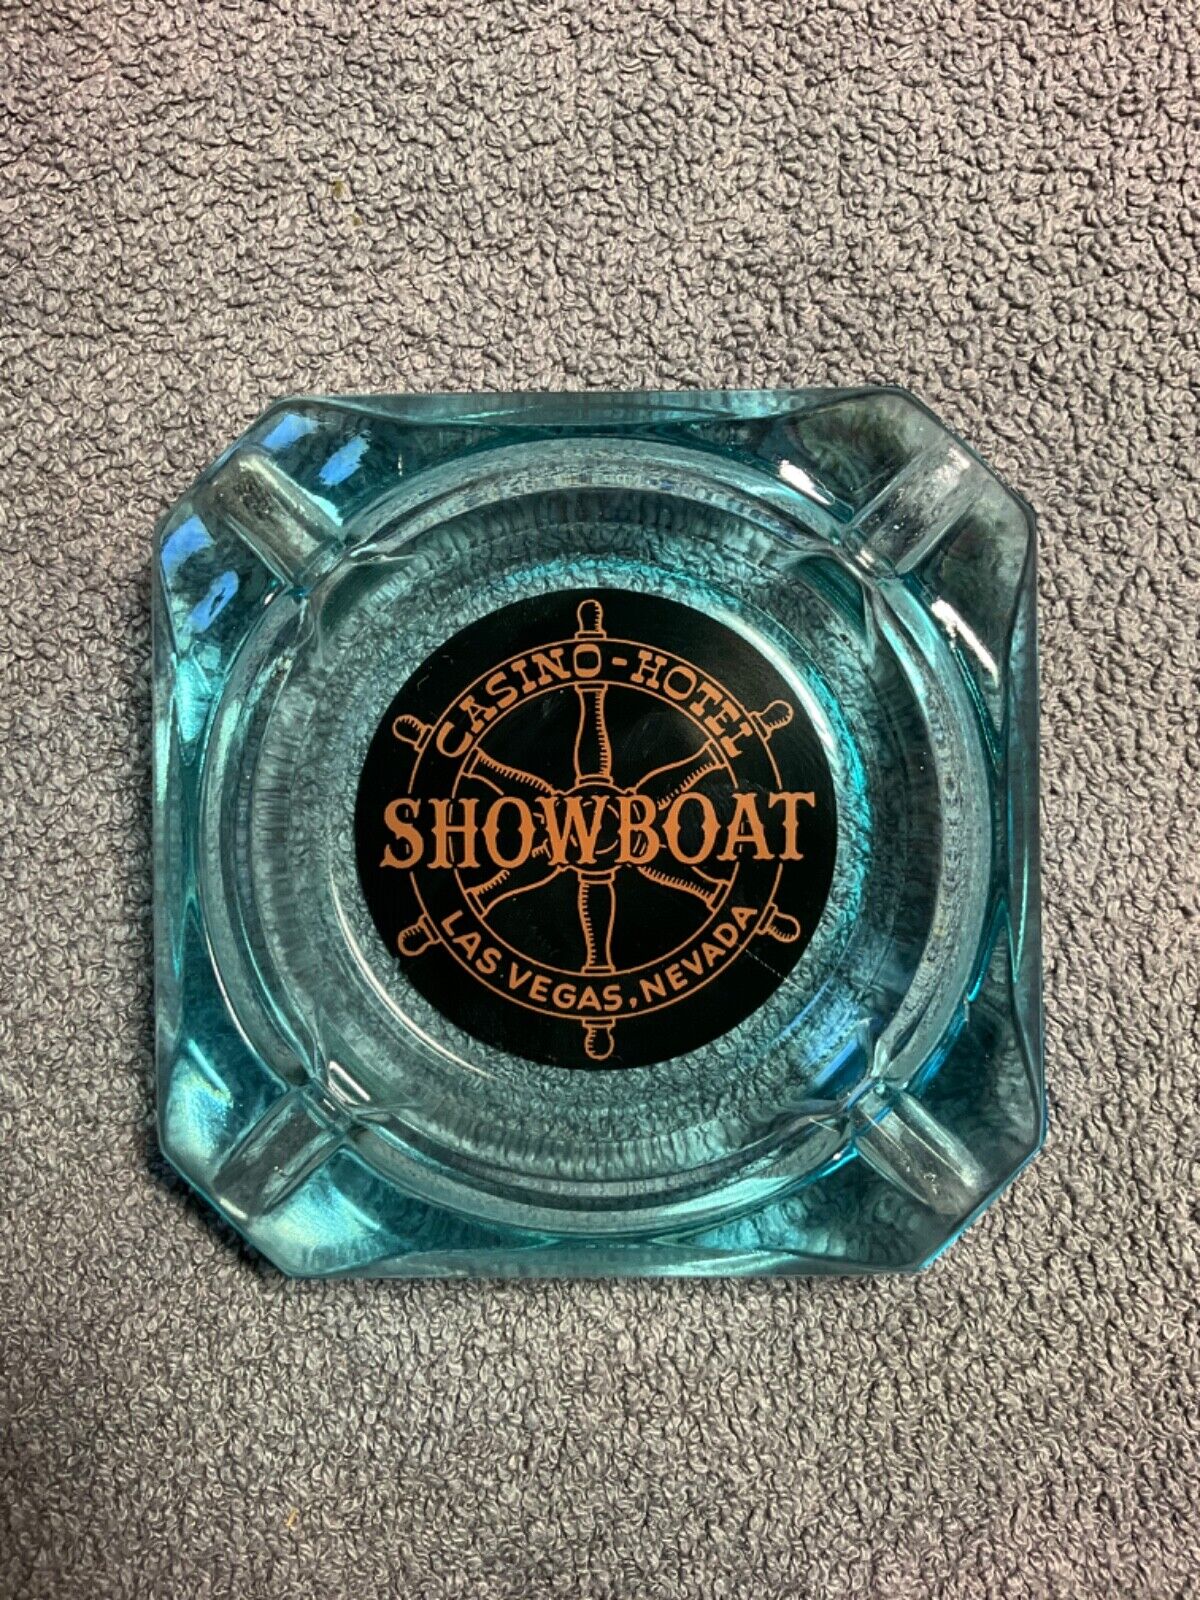 Vintage Showboat Casino Las Vegas NV Blue Glass Ashtray